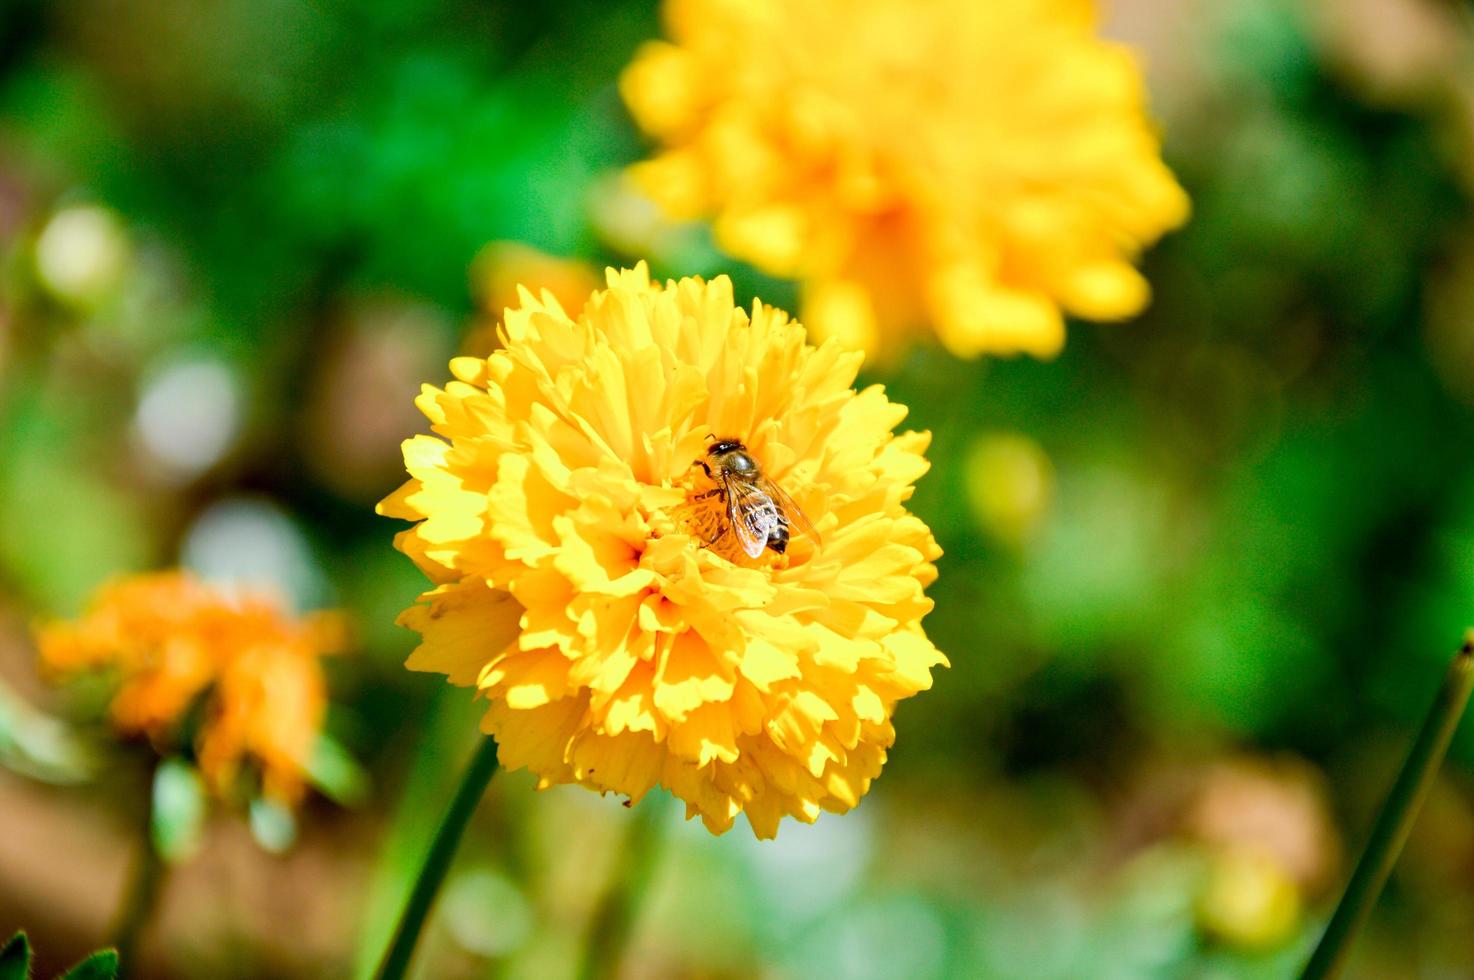 abeja en flor amarilla foto